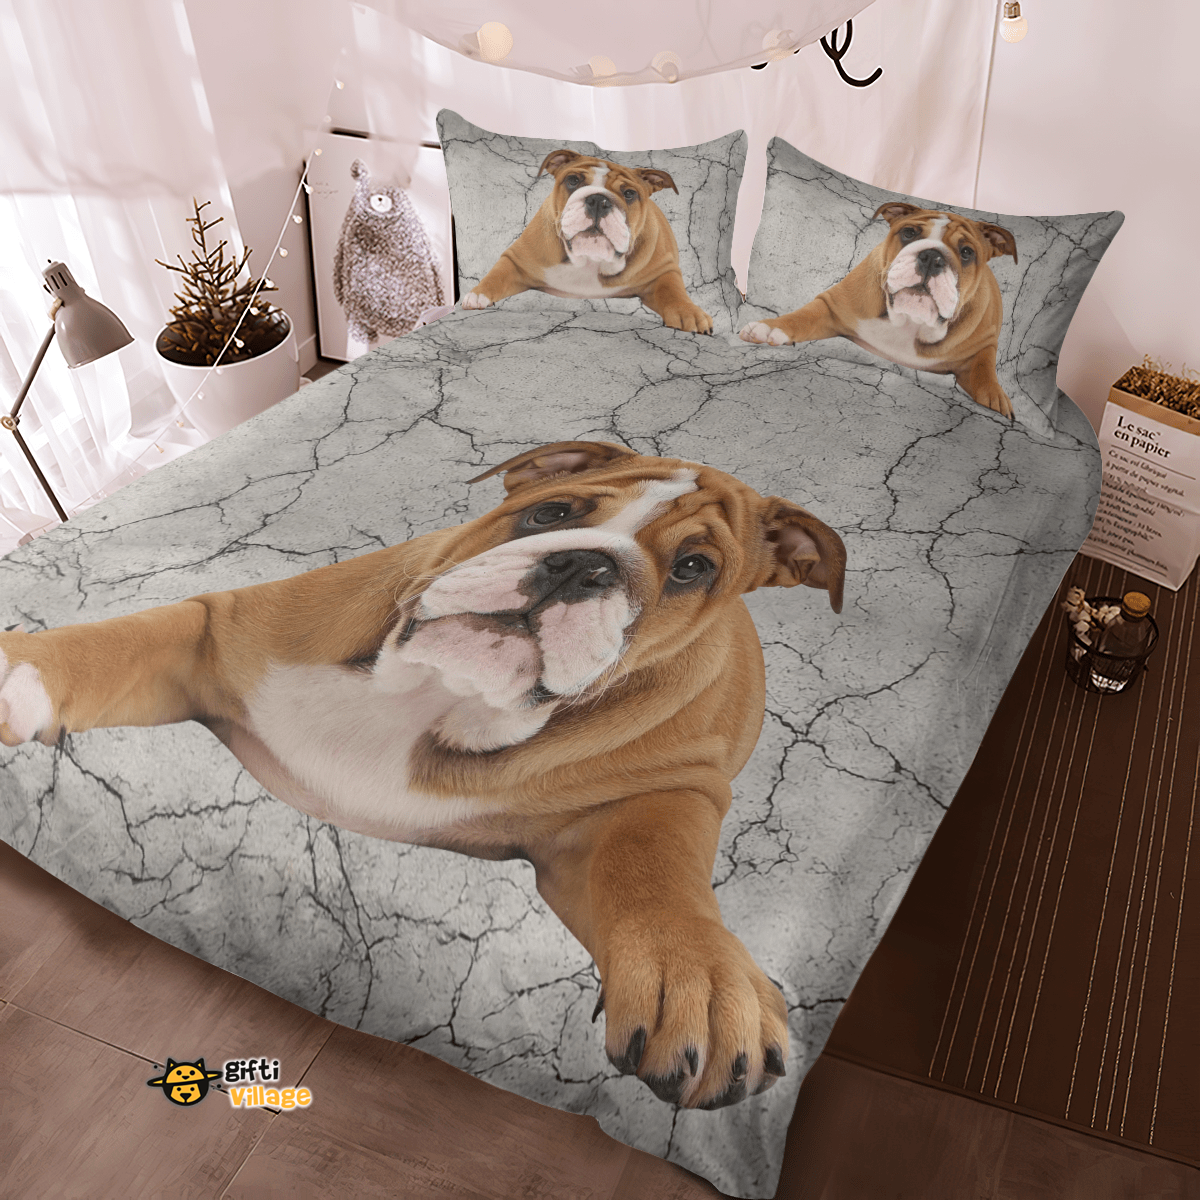 Bulldog Bedding Set